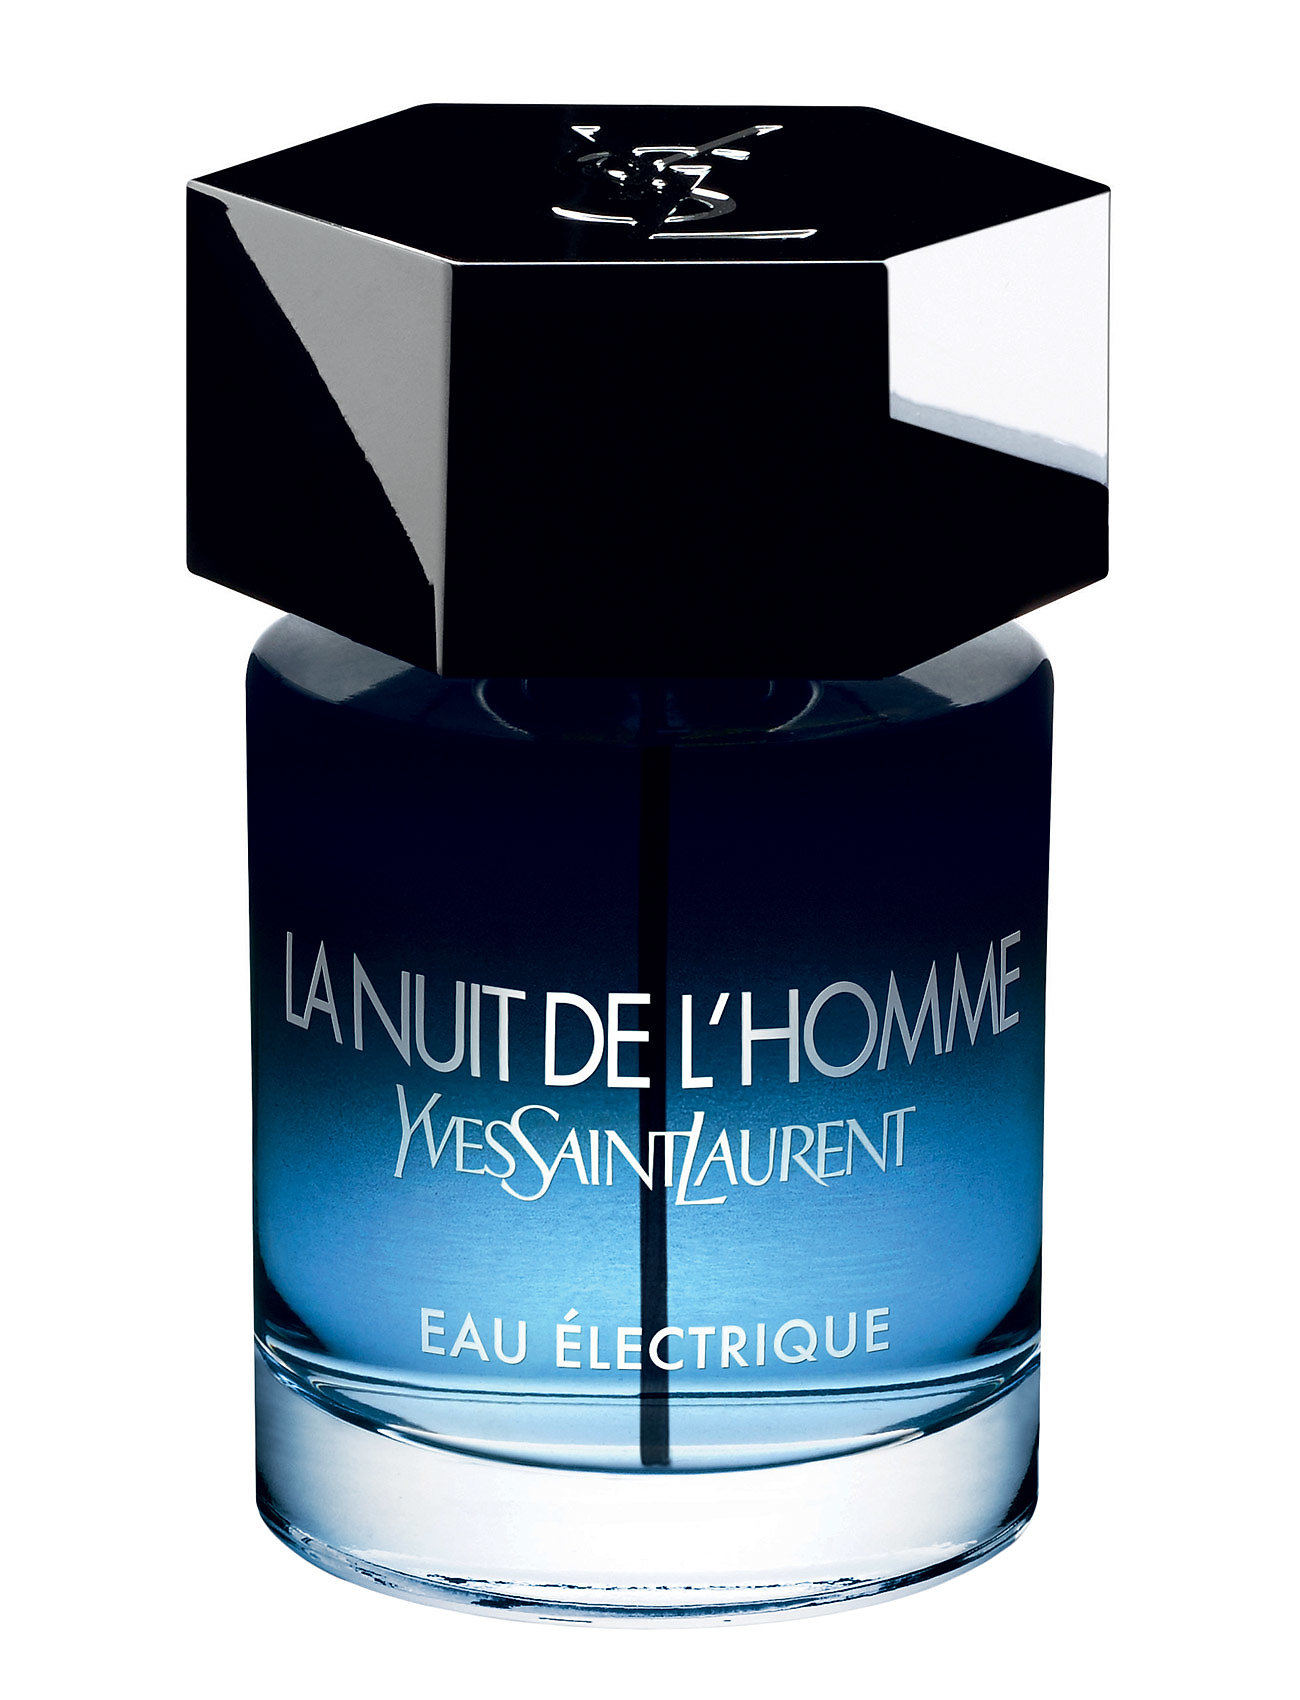 La Nuit De L'homme Eau Electrique Edt 100 Ml (950 kr) - Yves Saint